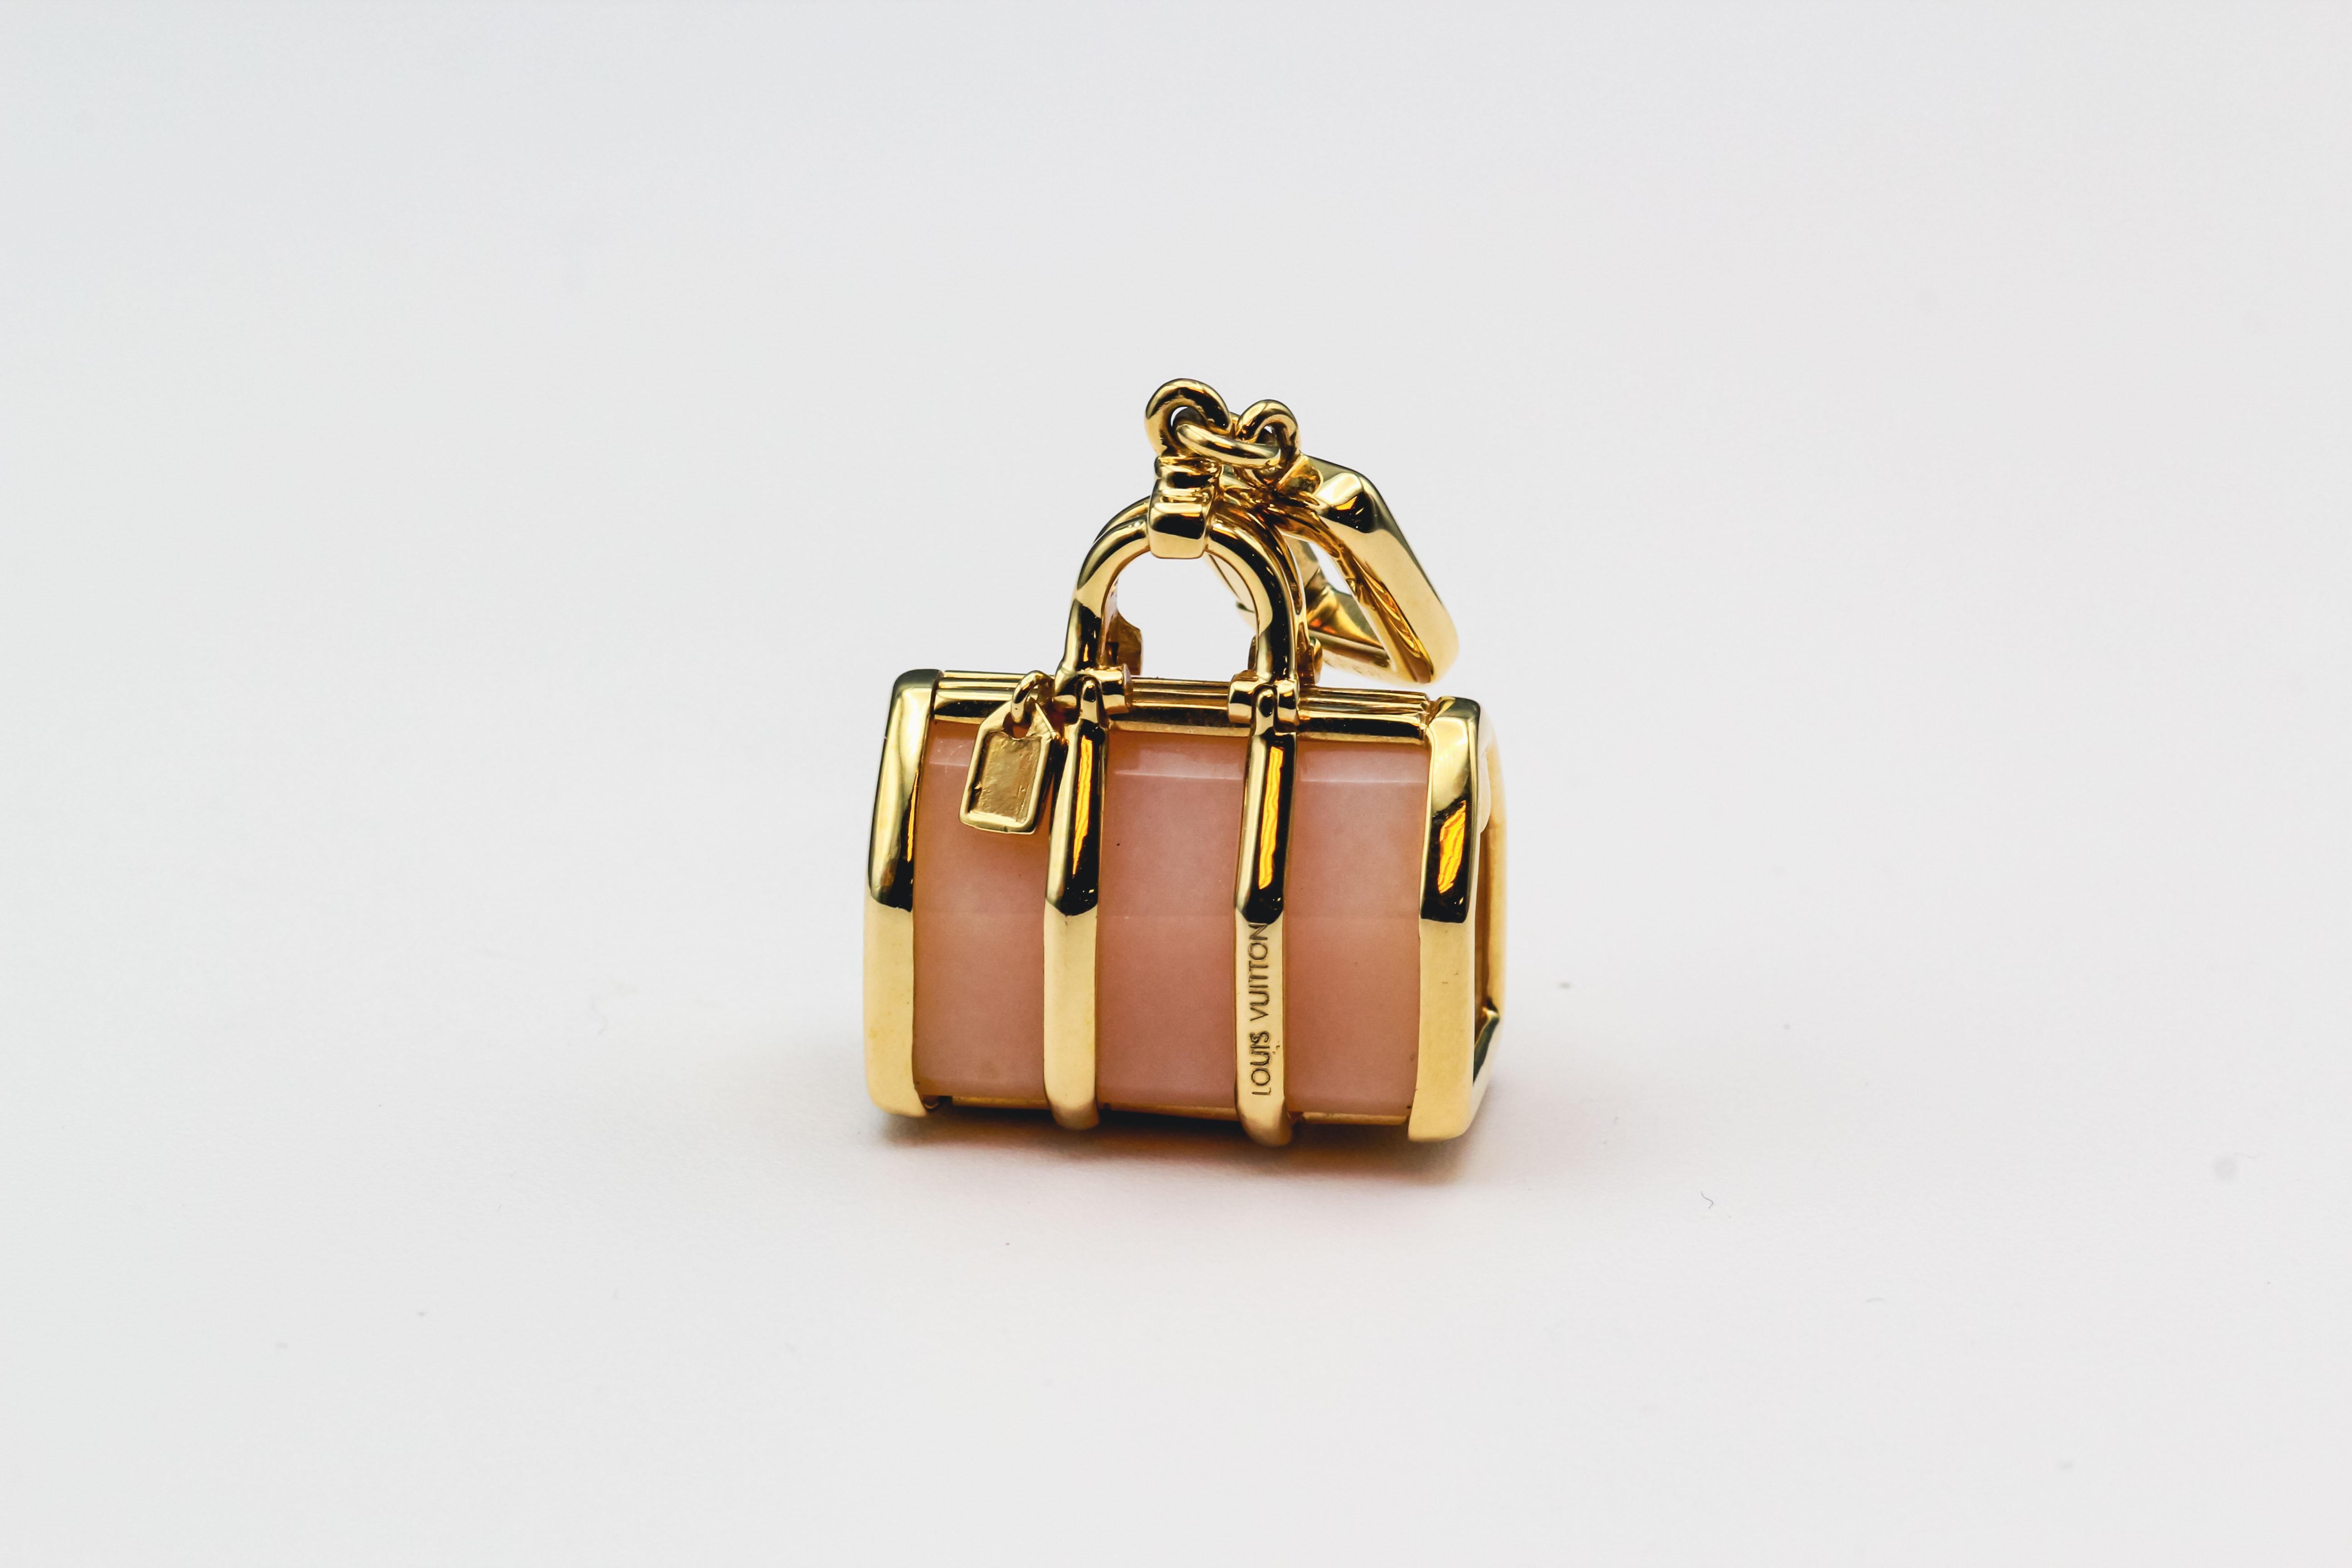 Erhöhen Sie Ihren Stil mit dem zeitgenössischen Louis Vuitton 18k Gelbgold Rosenquarz Keepall Bag Charm-Anhänger. Dieses exquisite Stück verbindet nahtlos modernen Luxus mit der zeitlosen Eleganz von Louis Vuitton und unterstreicht die Hingabe der